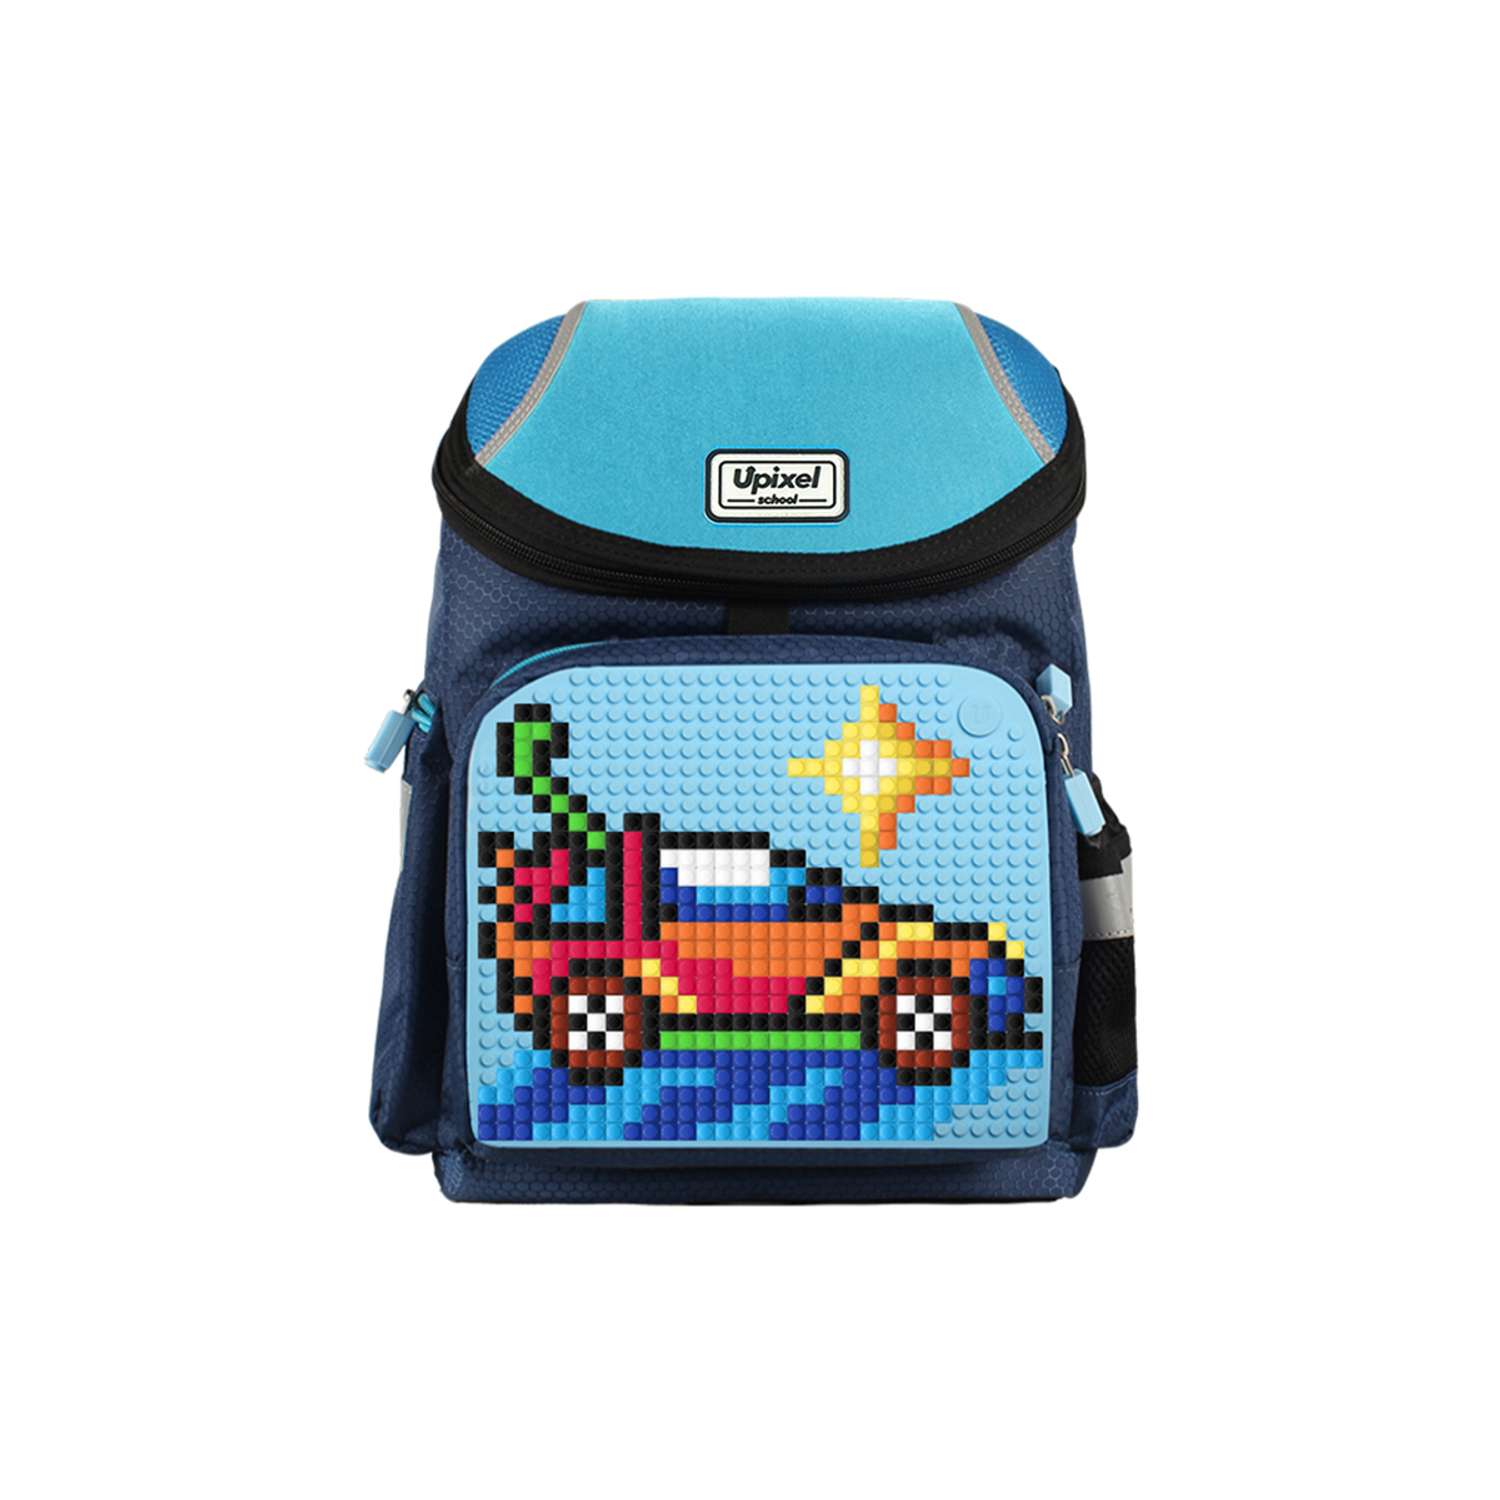 Рюкзак школьный Upixel super Class school bag WY-A019 Темно-синий - фото 1